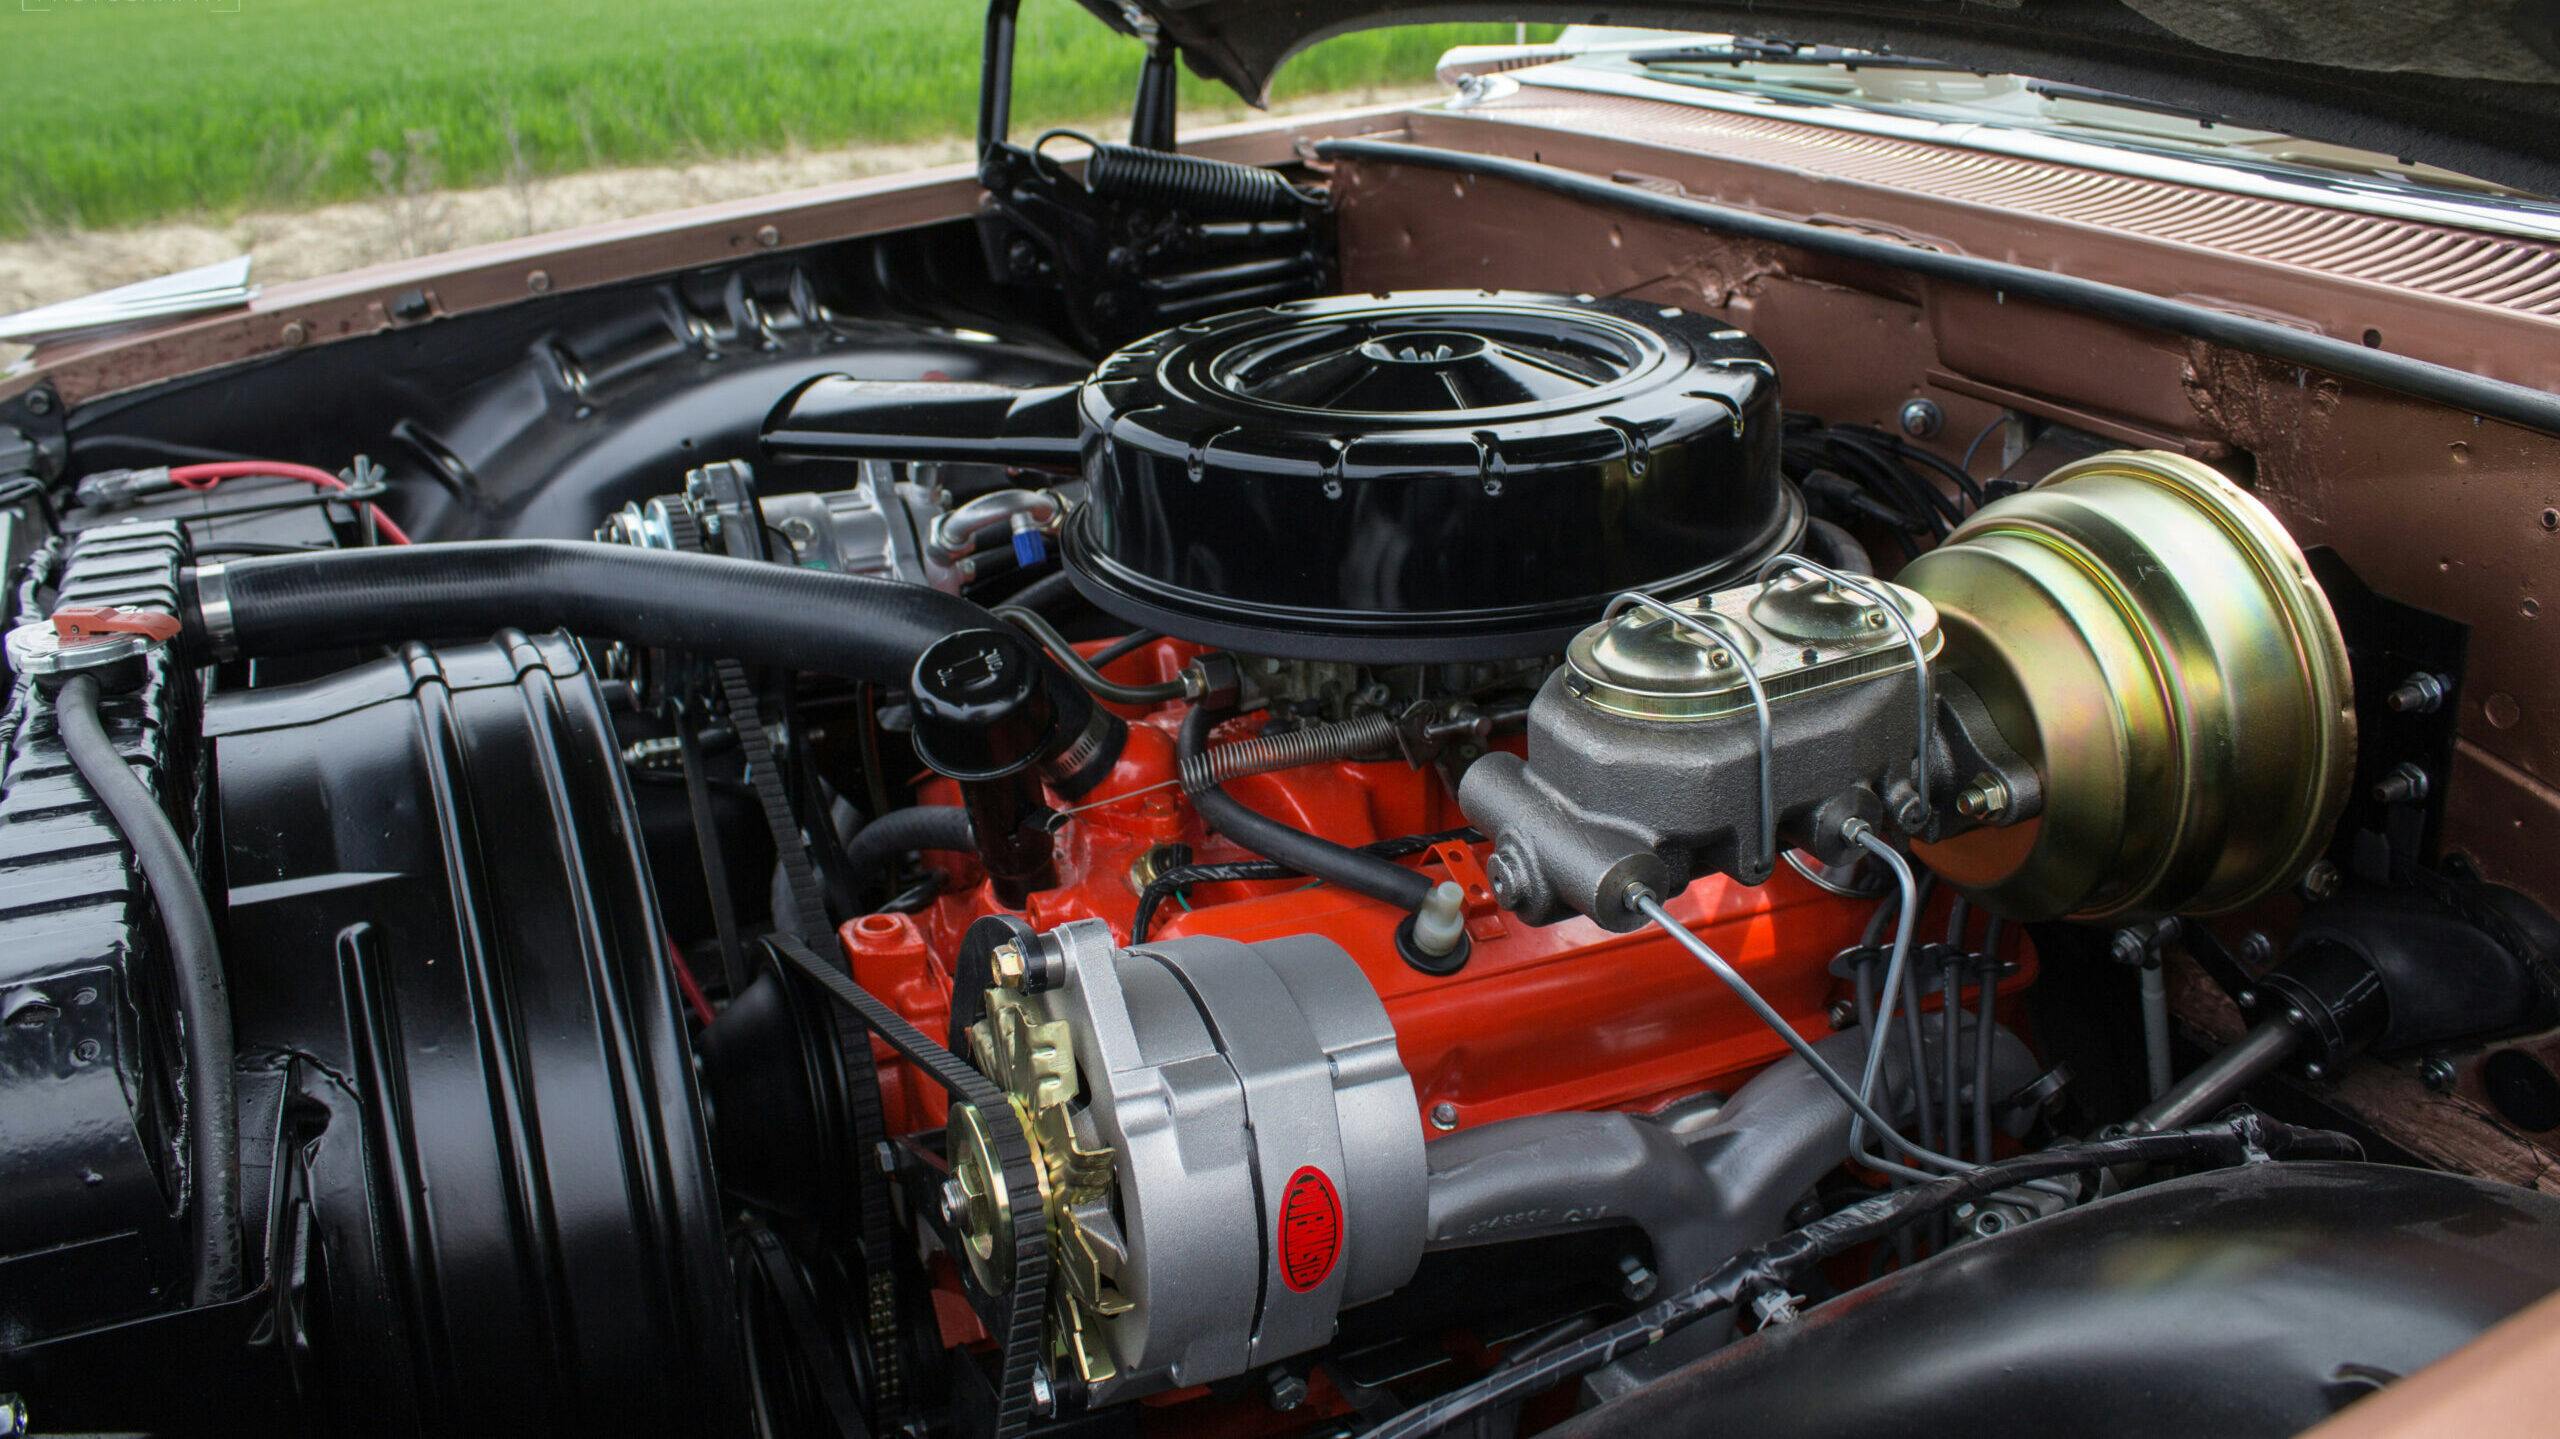 Beneteau 1959 Bel Air engine